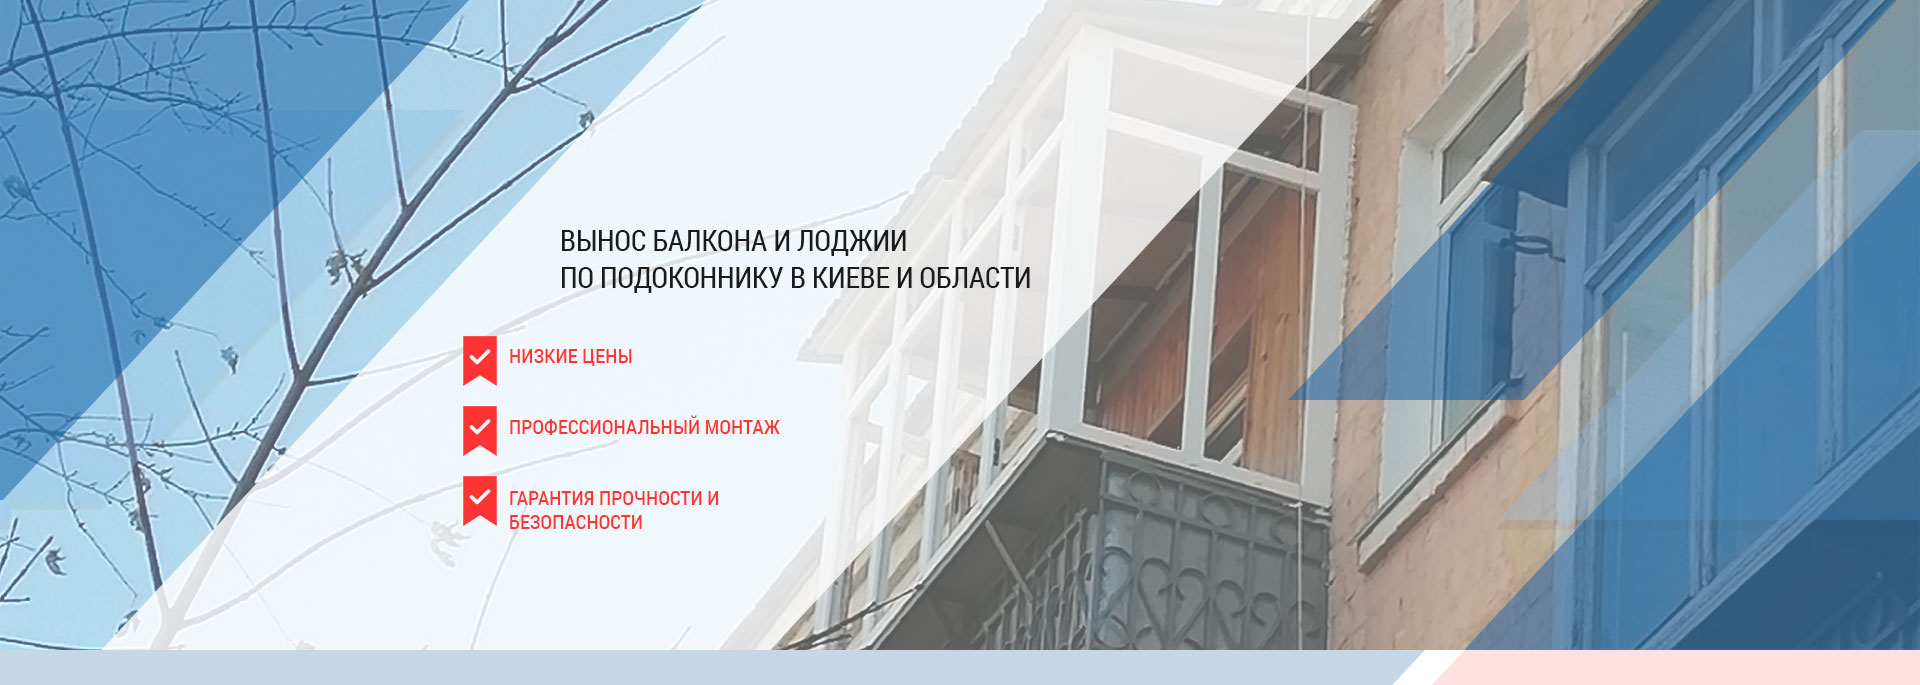 Скління балкона з виносом по підвіконню в Києві